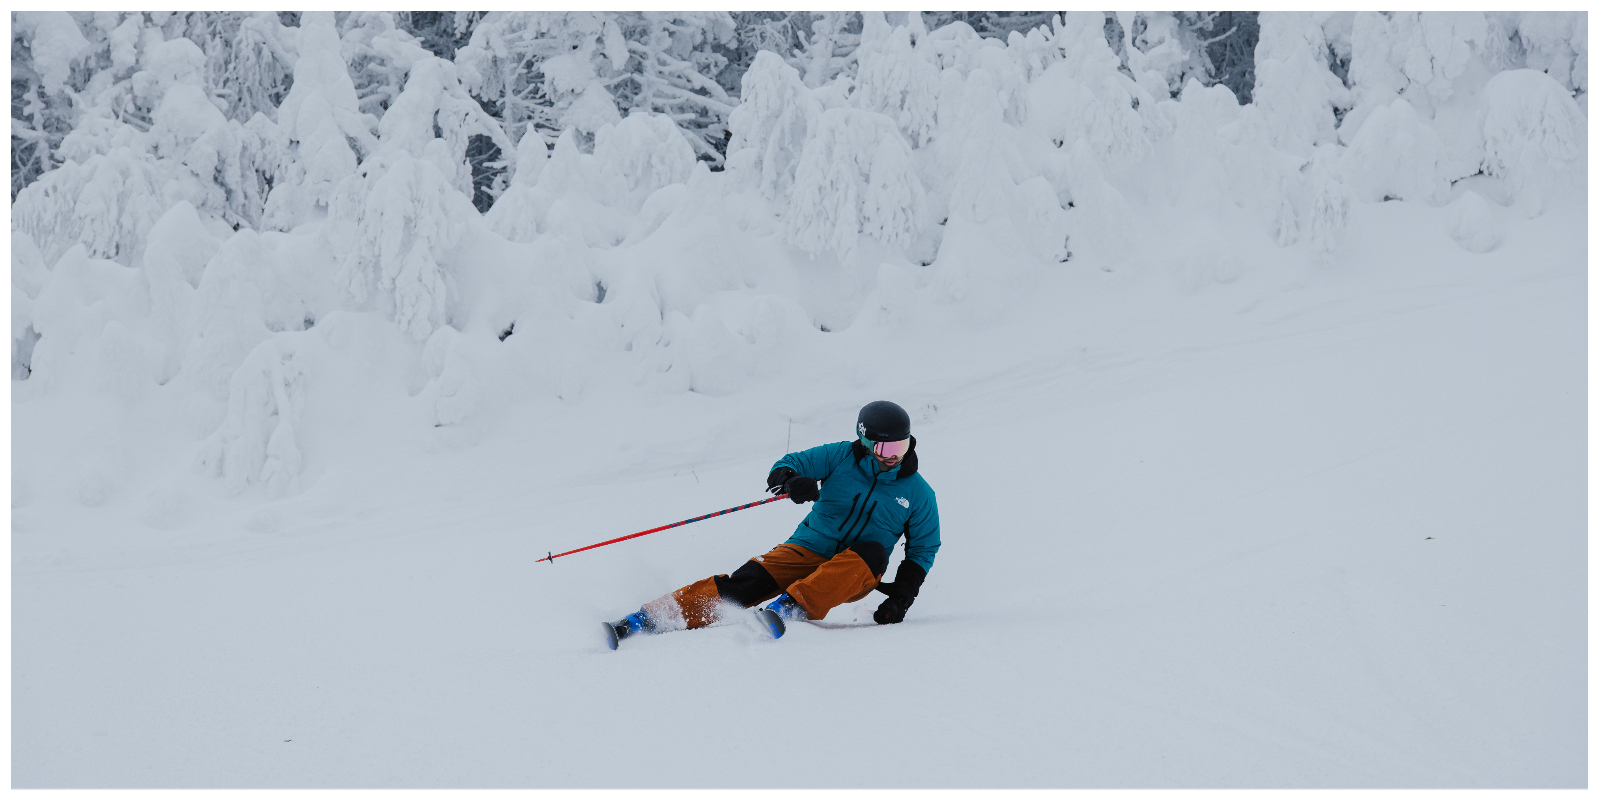 Skiing, ski test, skis, winter, snow, mountains, Vermont, Sugarbush, Salomon Skis, Salomon, Salomon BOA boots, BOA boots